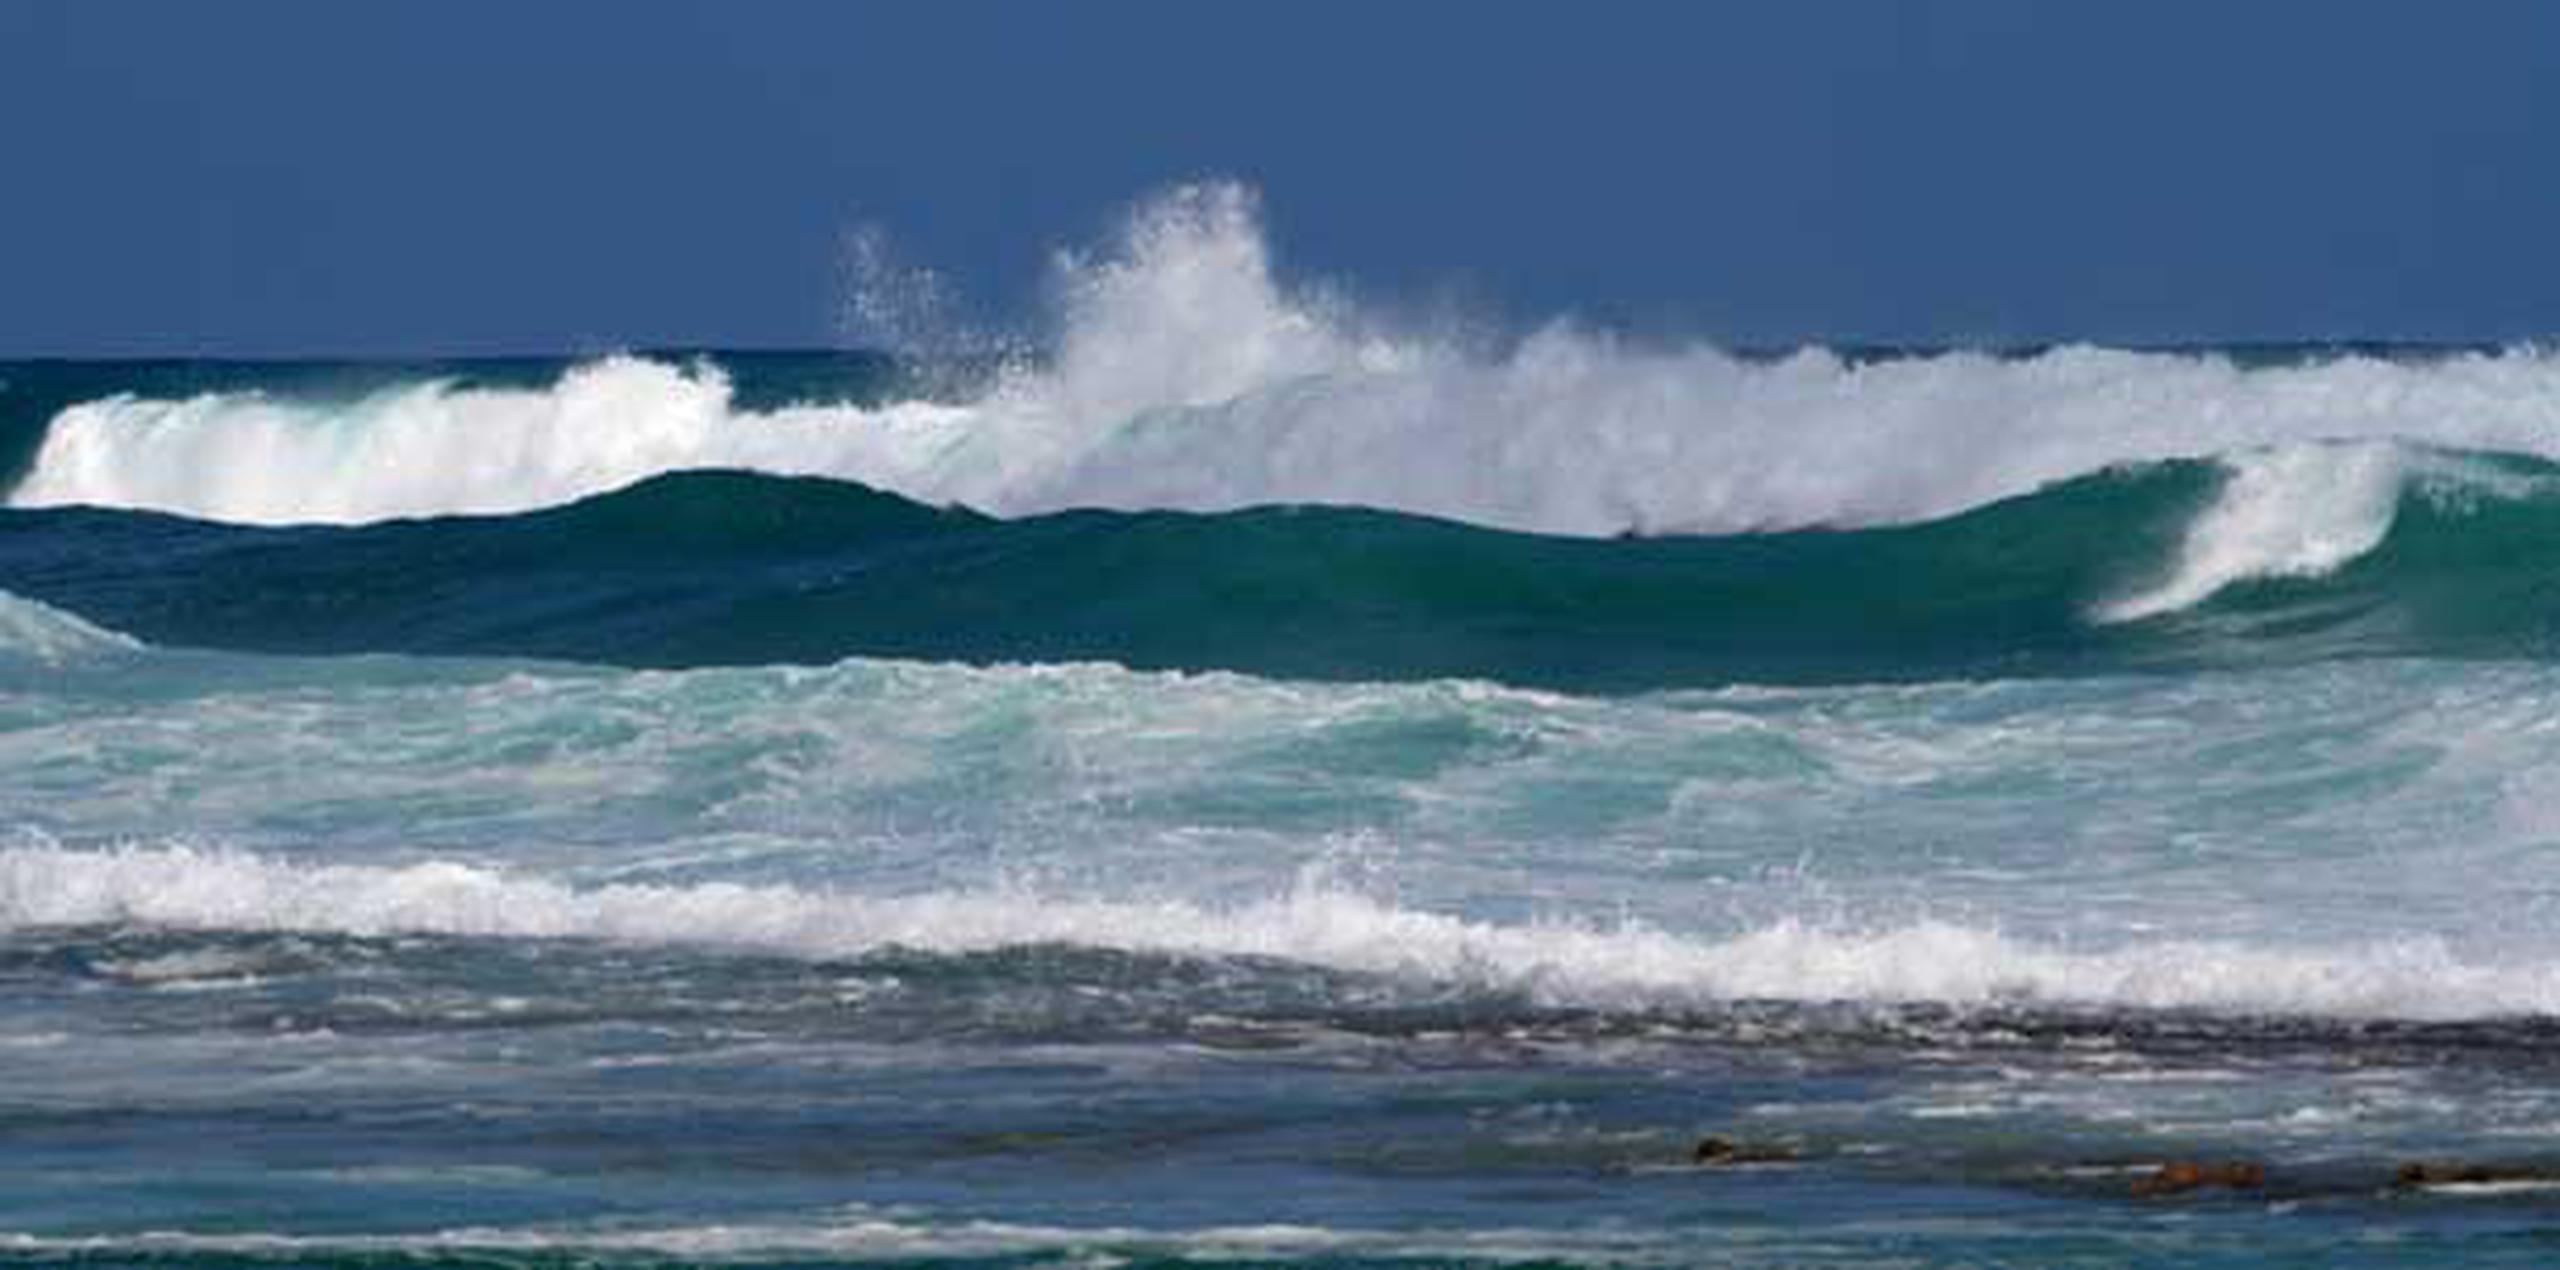 El evento de marejadas trae consigo vientos de hasta 20 nudos y olas de 7 a 11 pies de altura. (Archivo)